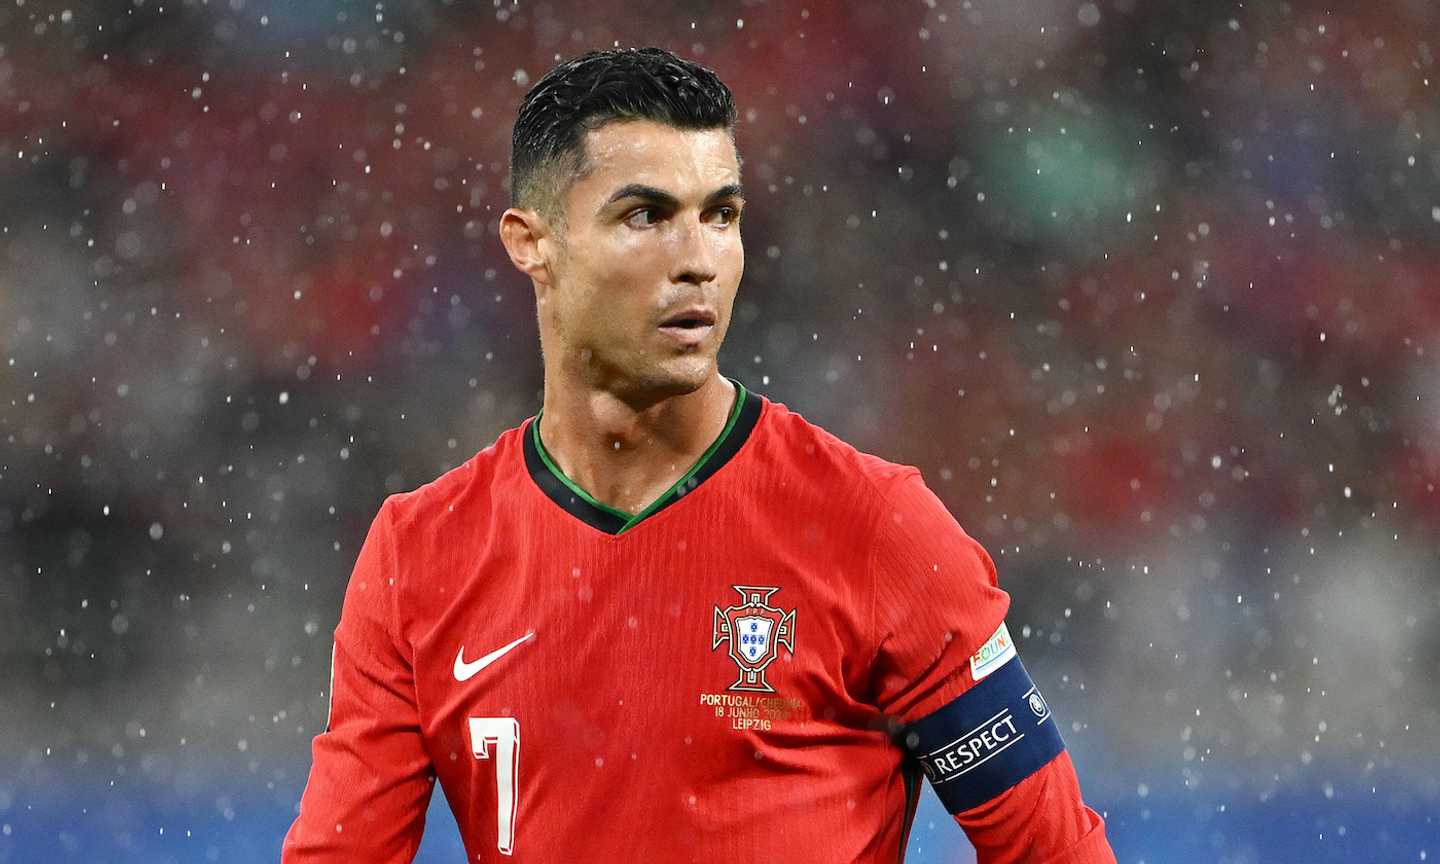 Portogallo-Slovenia, formazioni ufficiali: Ronaldo c'è, Kek lancia Balkovec